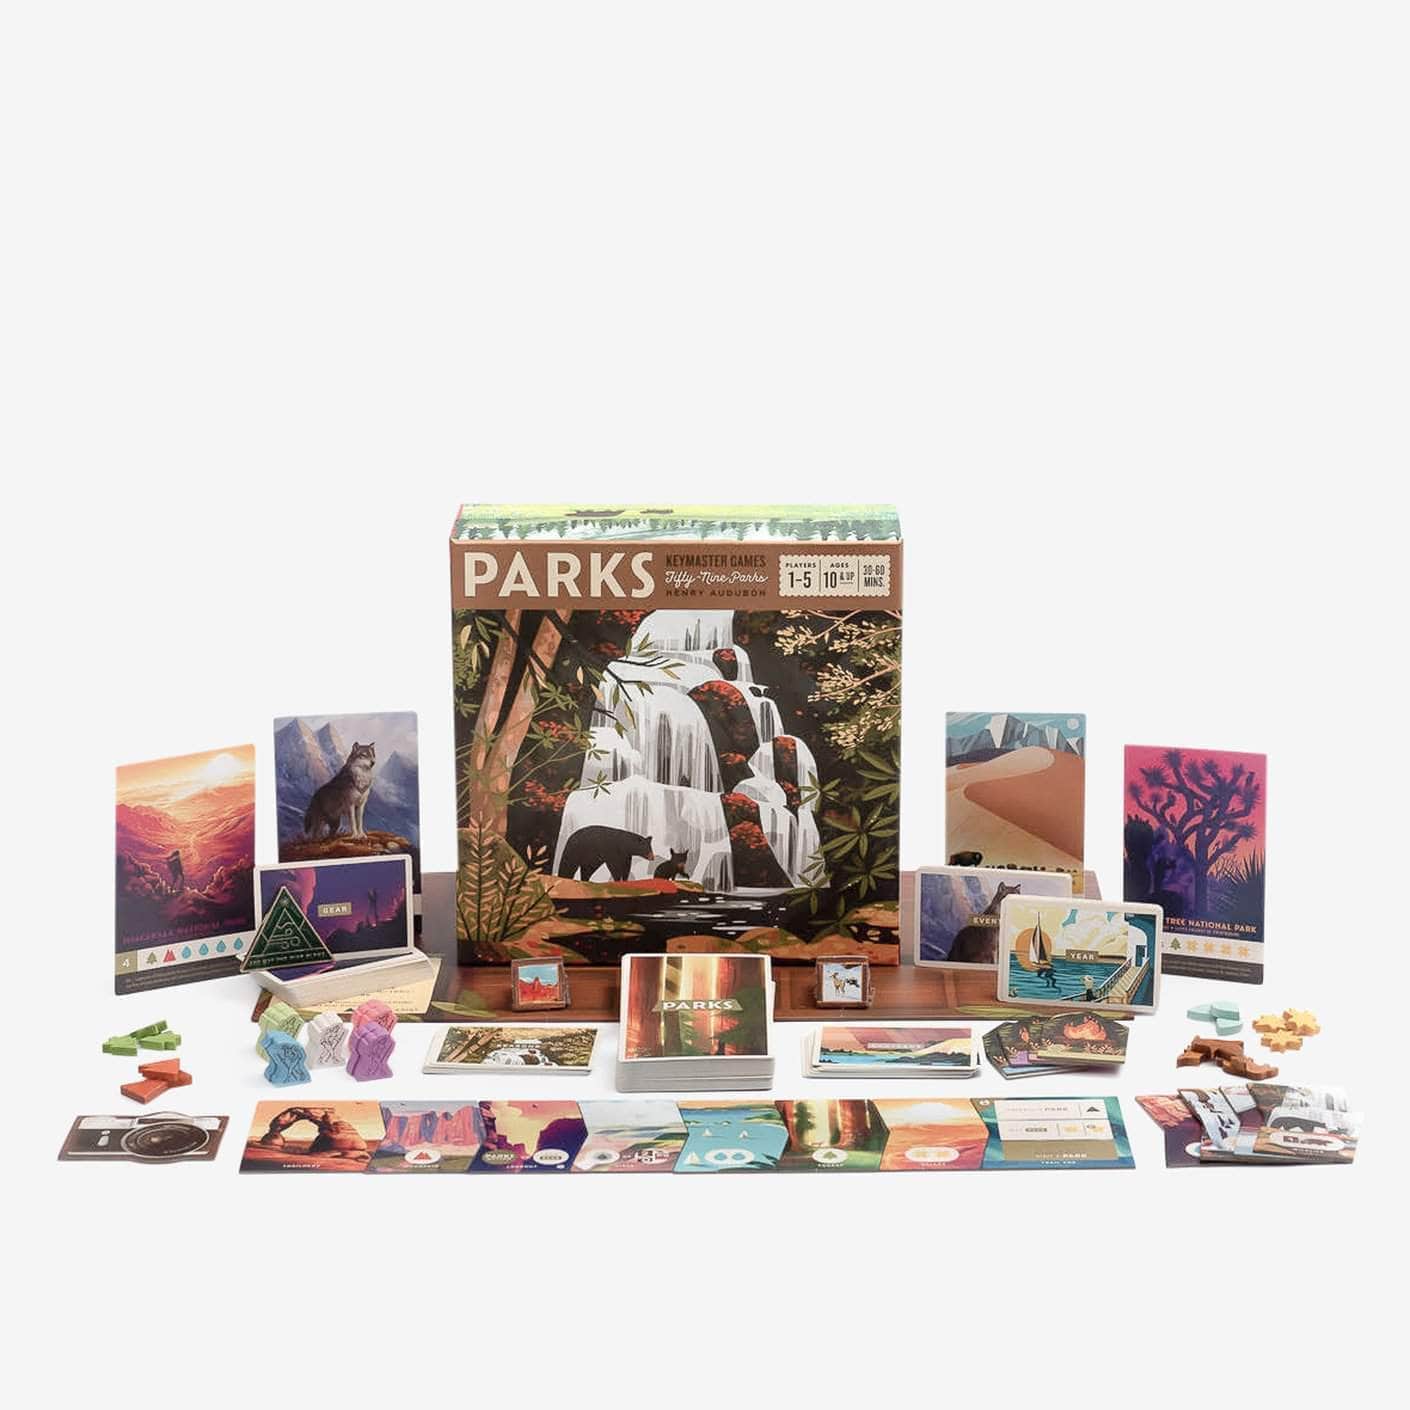 Parks: het bordspel (Retail Edition) Retail Board Game Keymaster Games 0850003498027 KS000956B